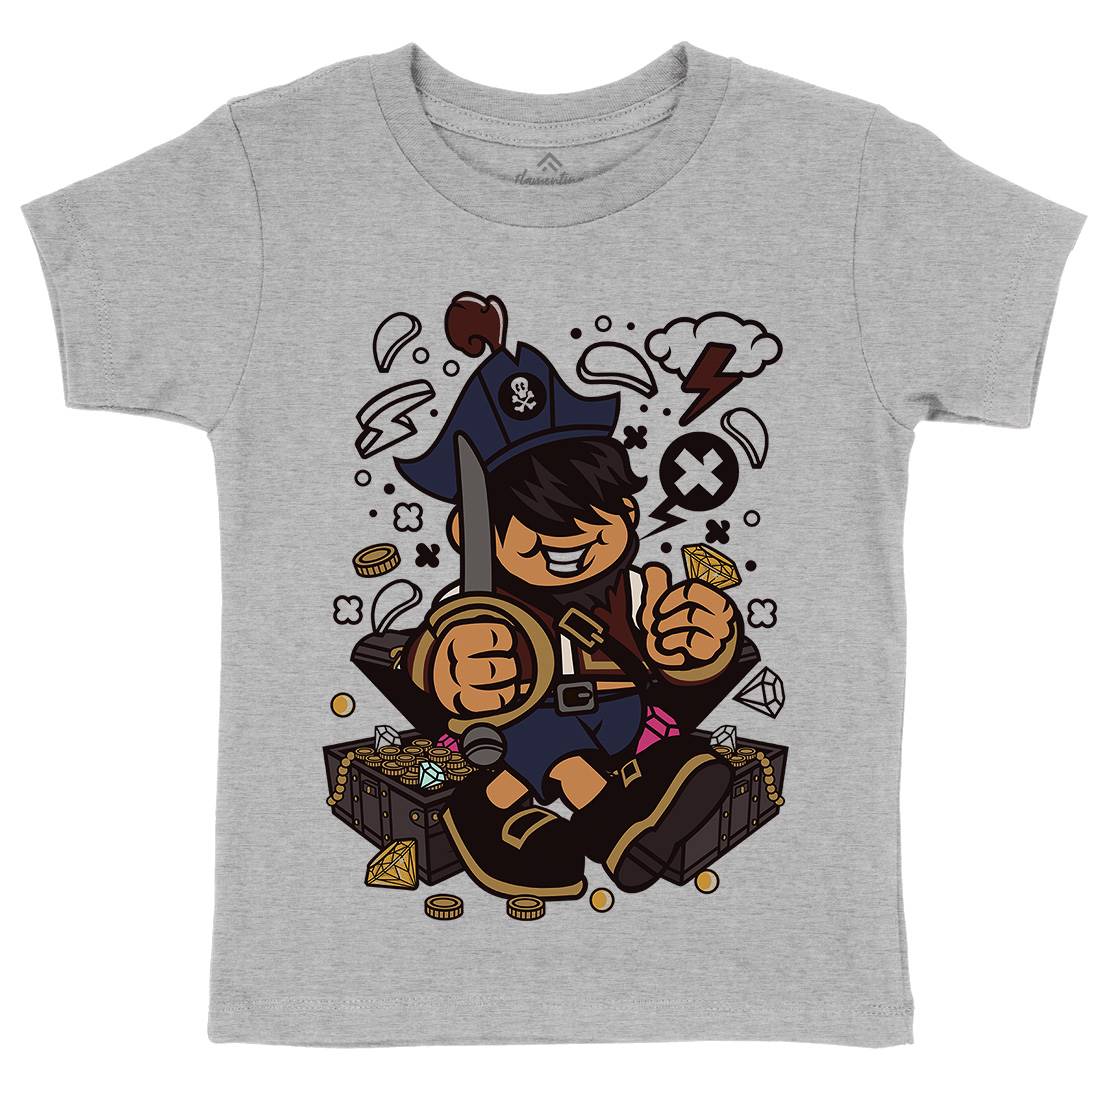 Pirate Kid Kids Organic Crew Neck T-Shirt Navy C191